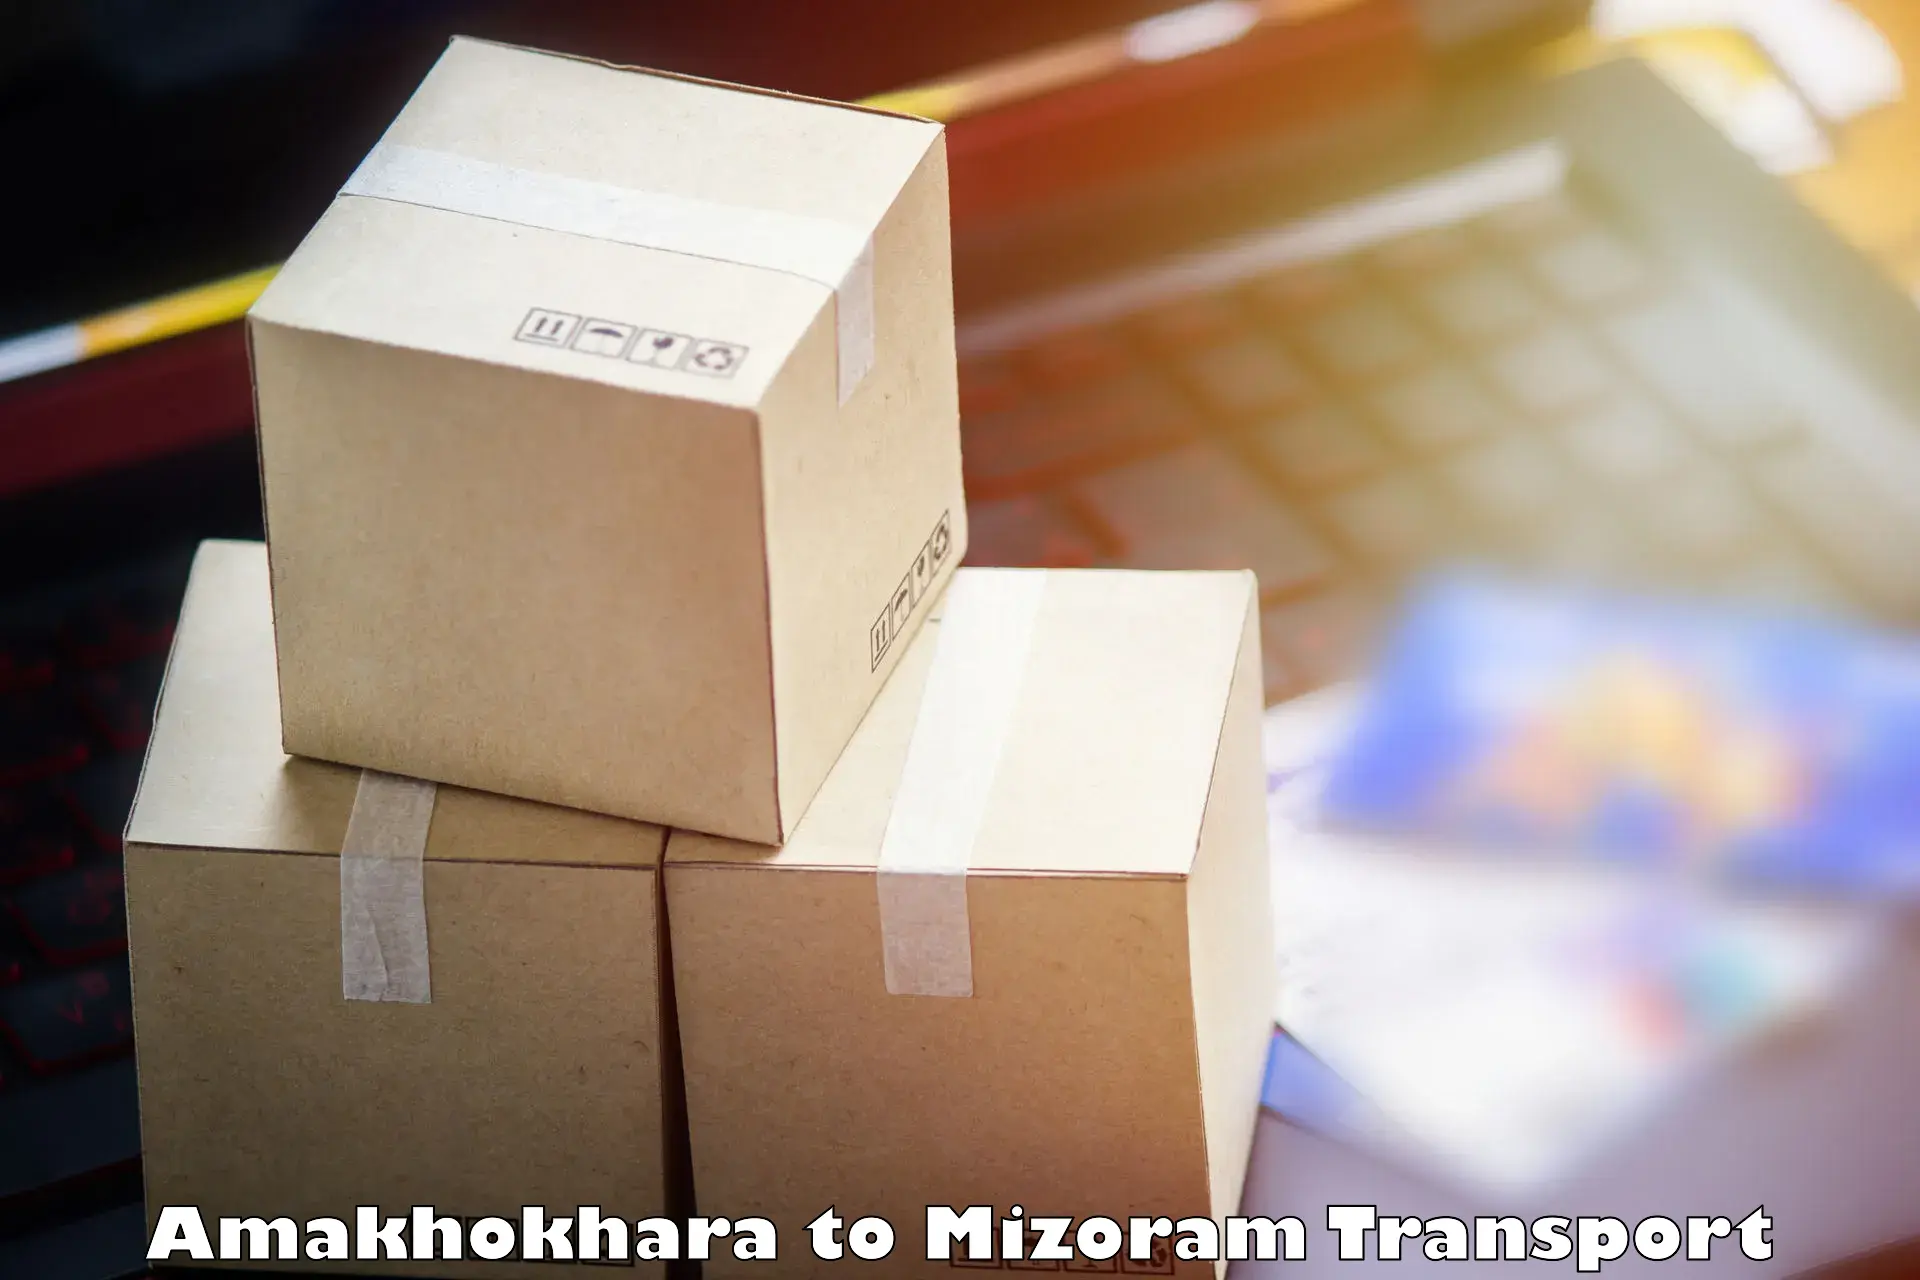 Cargo transport services Amakhokhara to Kolasib